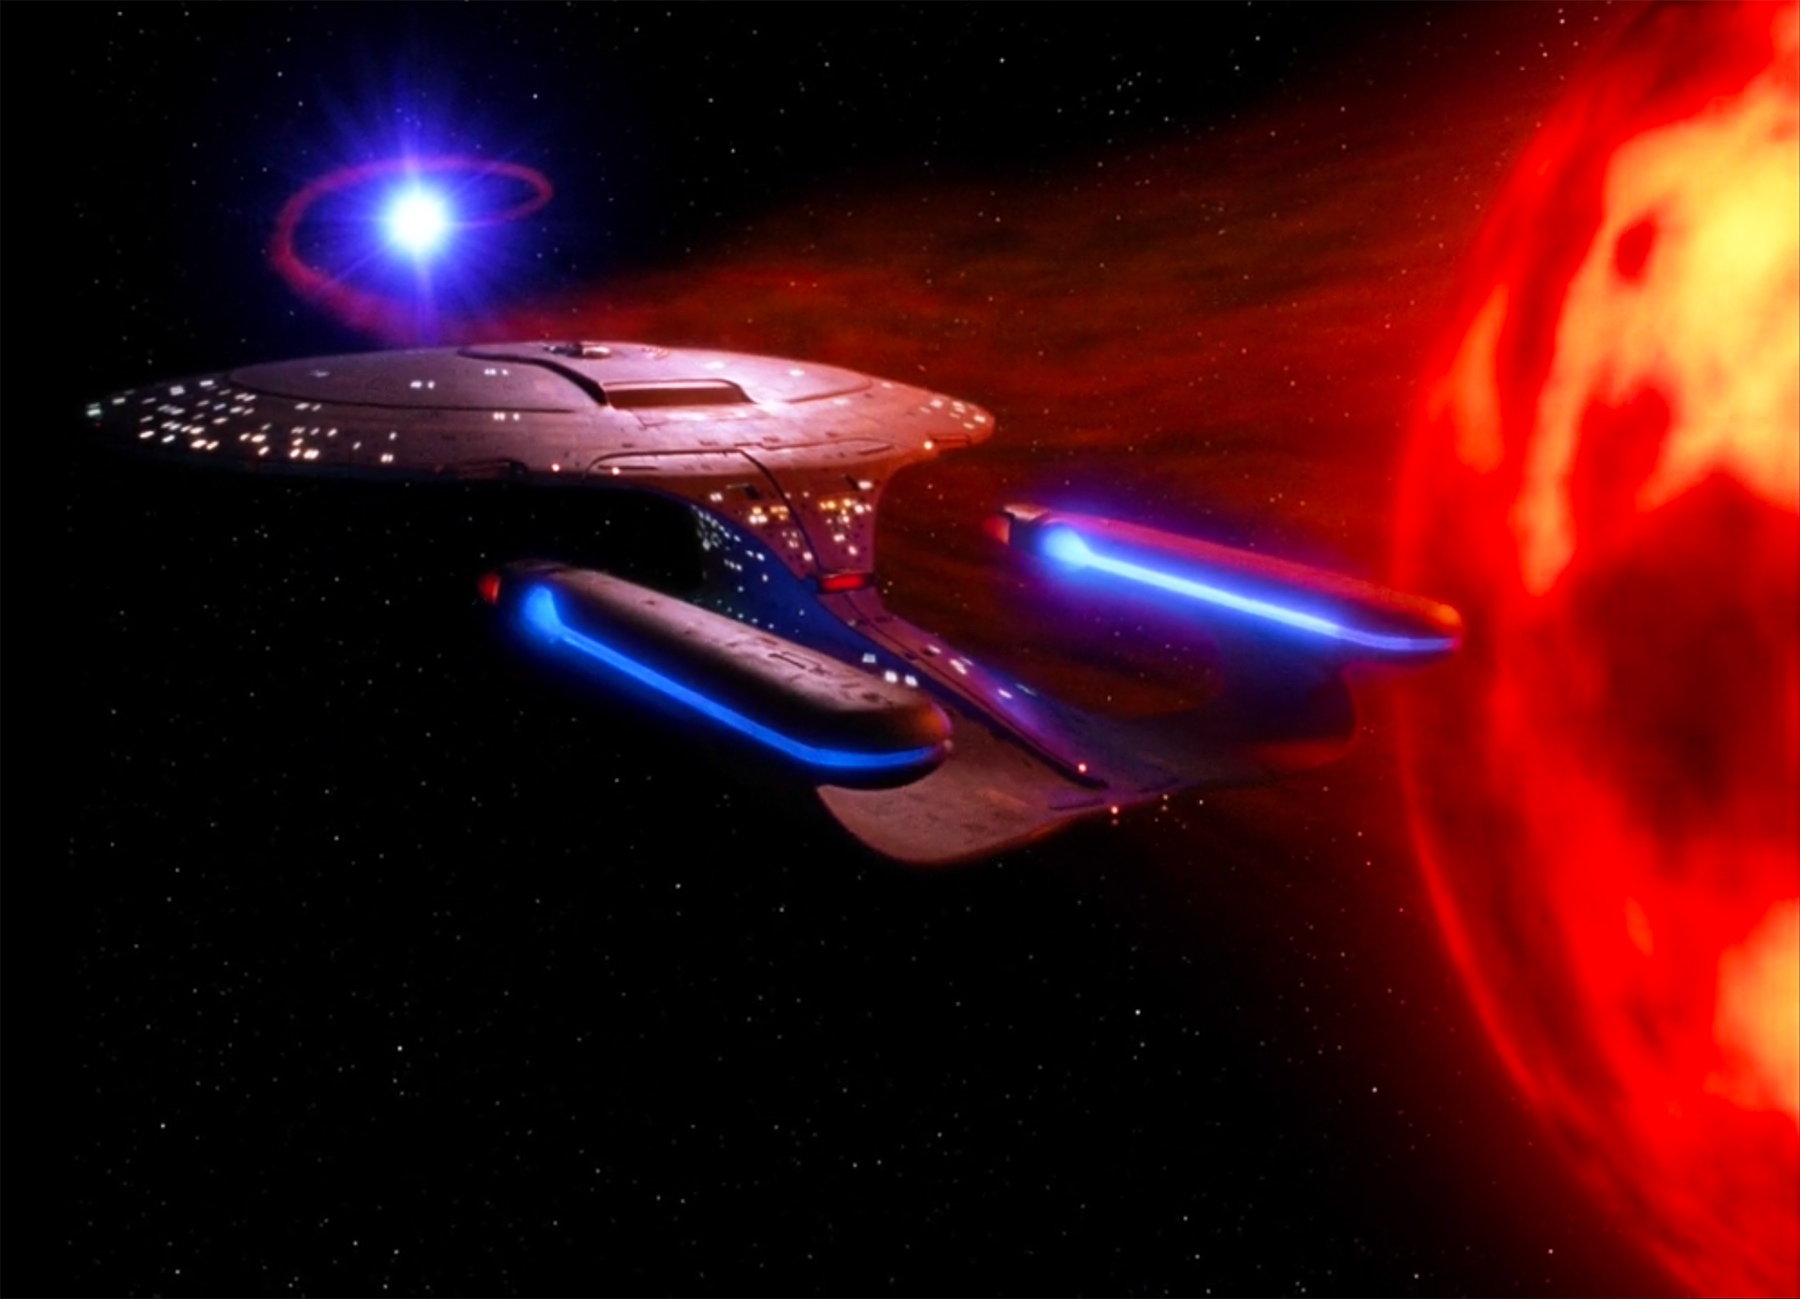 Evolution of the Starship Enterprise